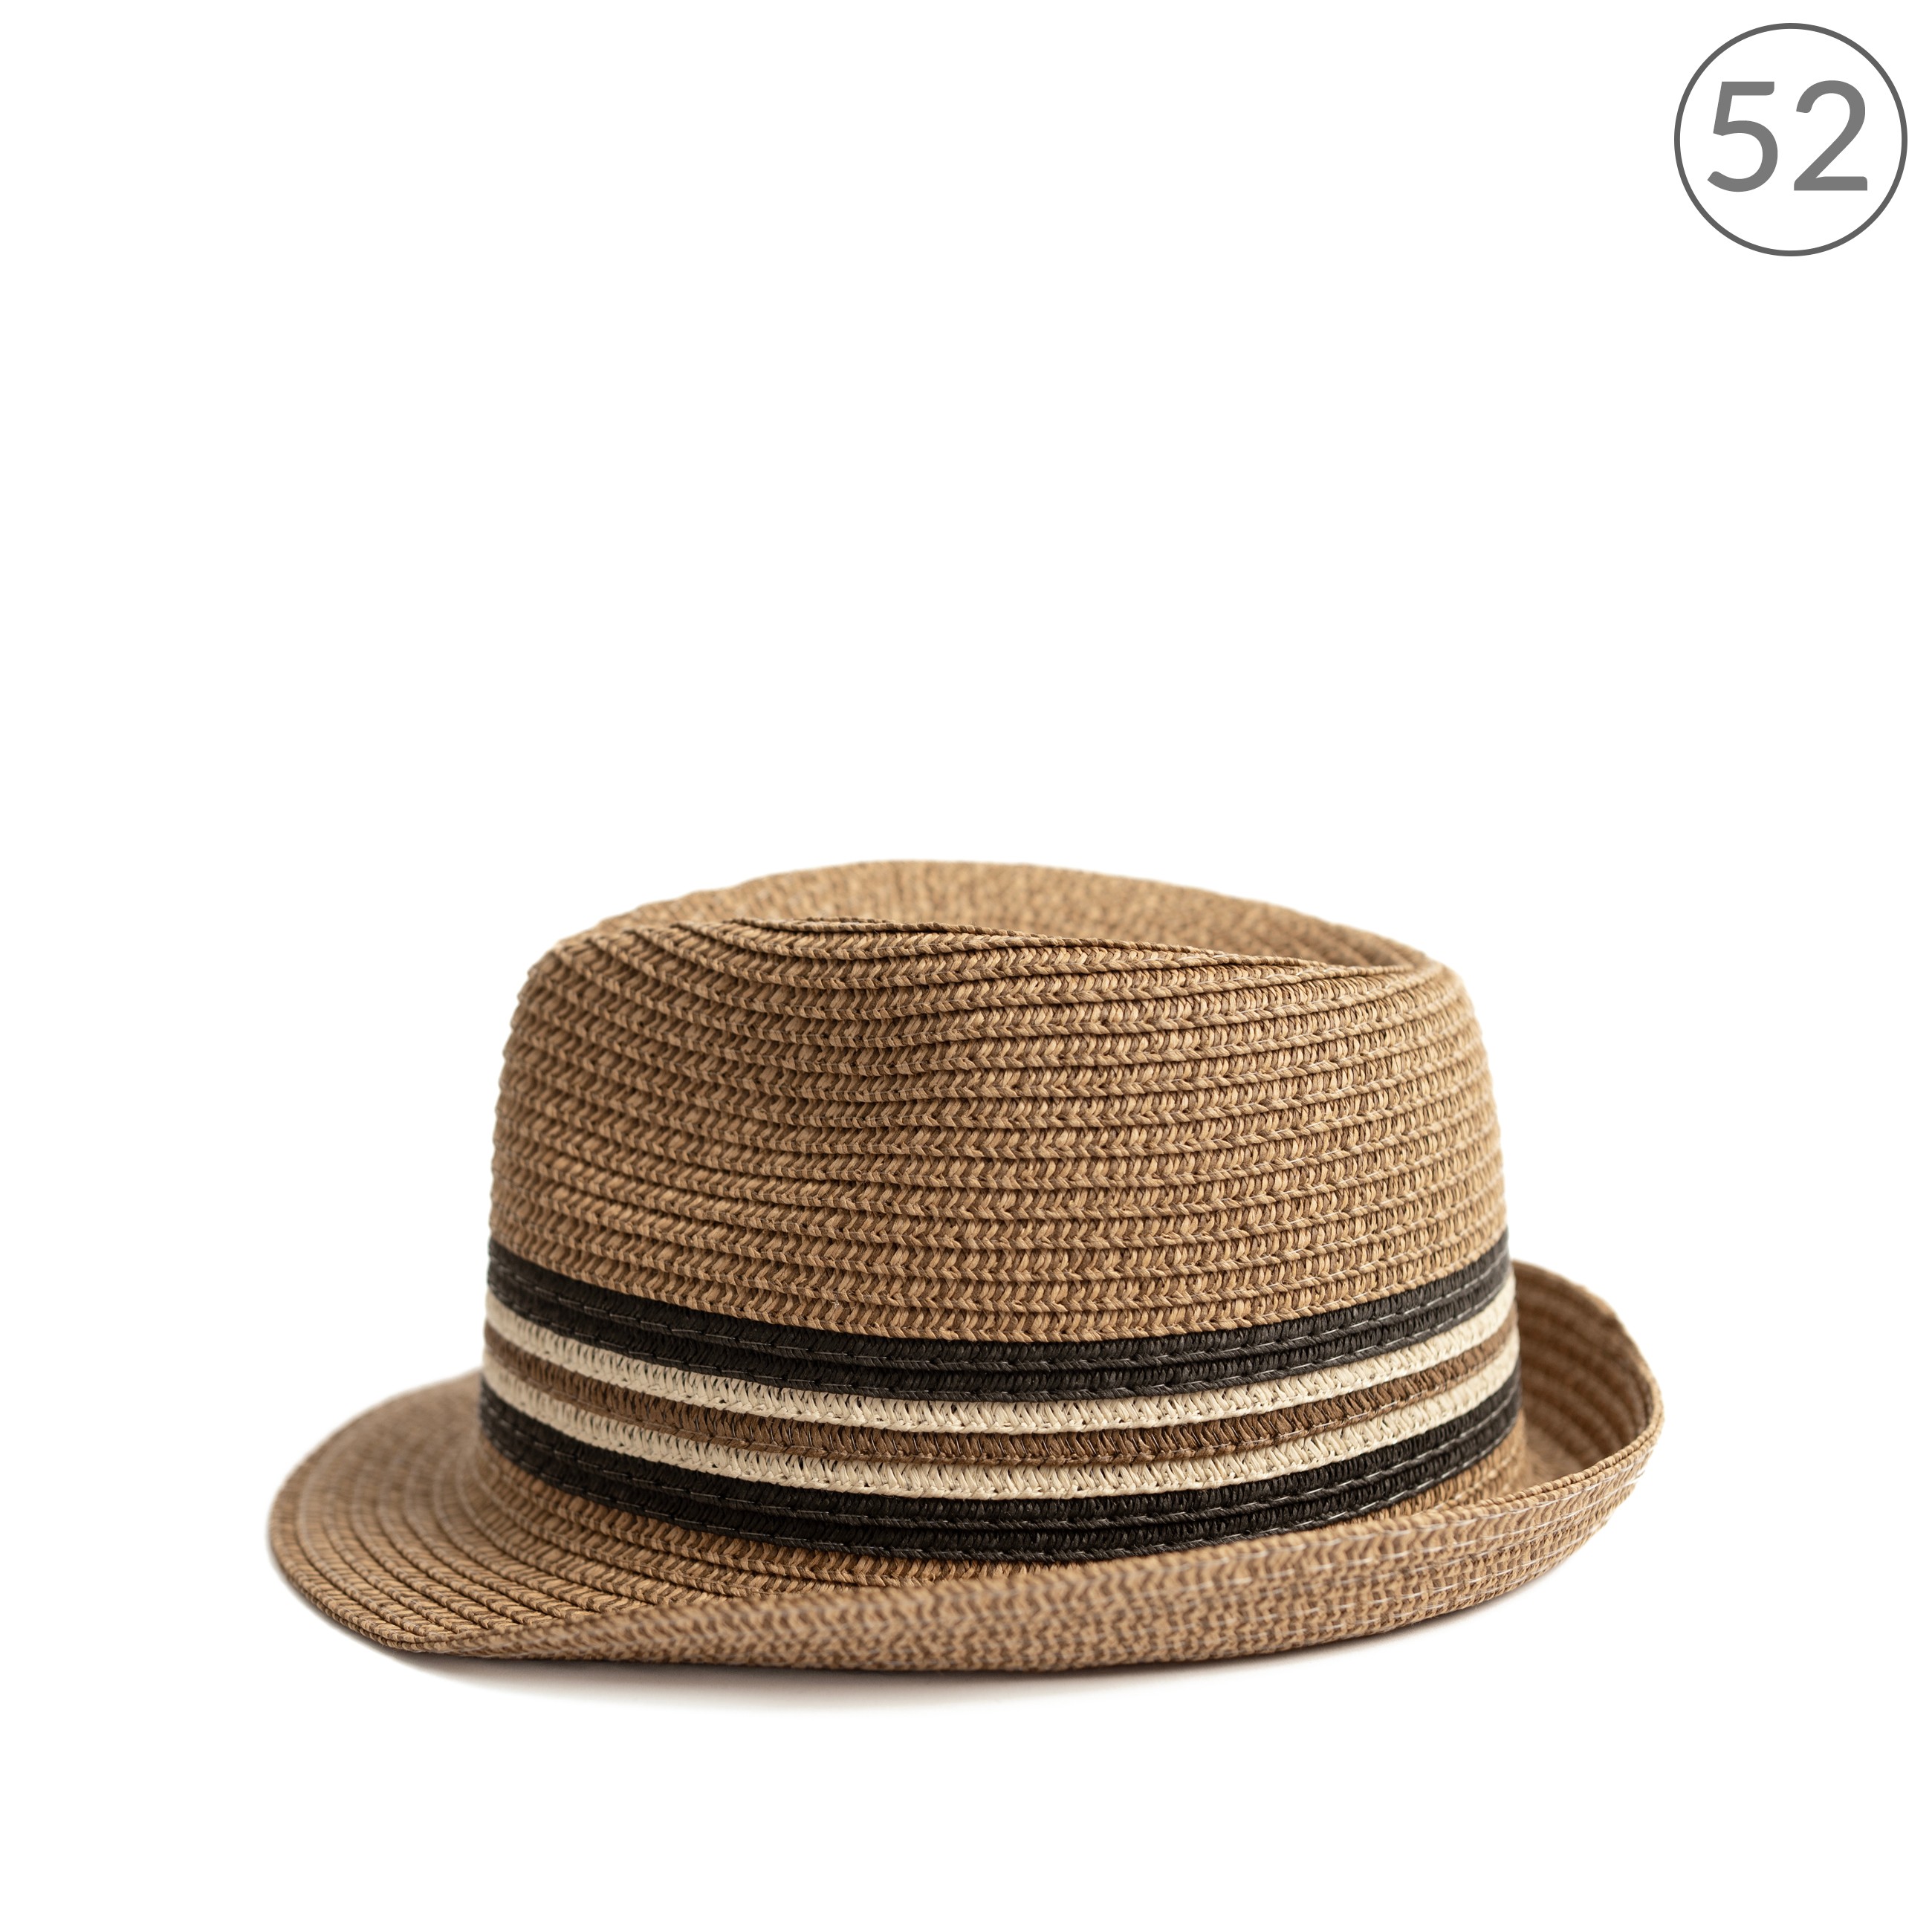 Chlapecký slaměný klobouk cz24116 Barva: hnědá, Velikost: 52